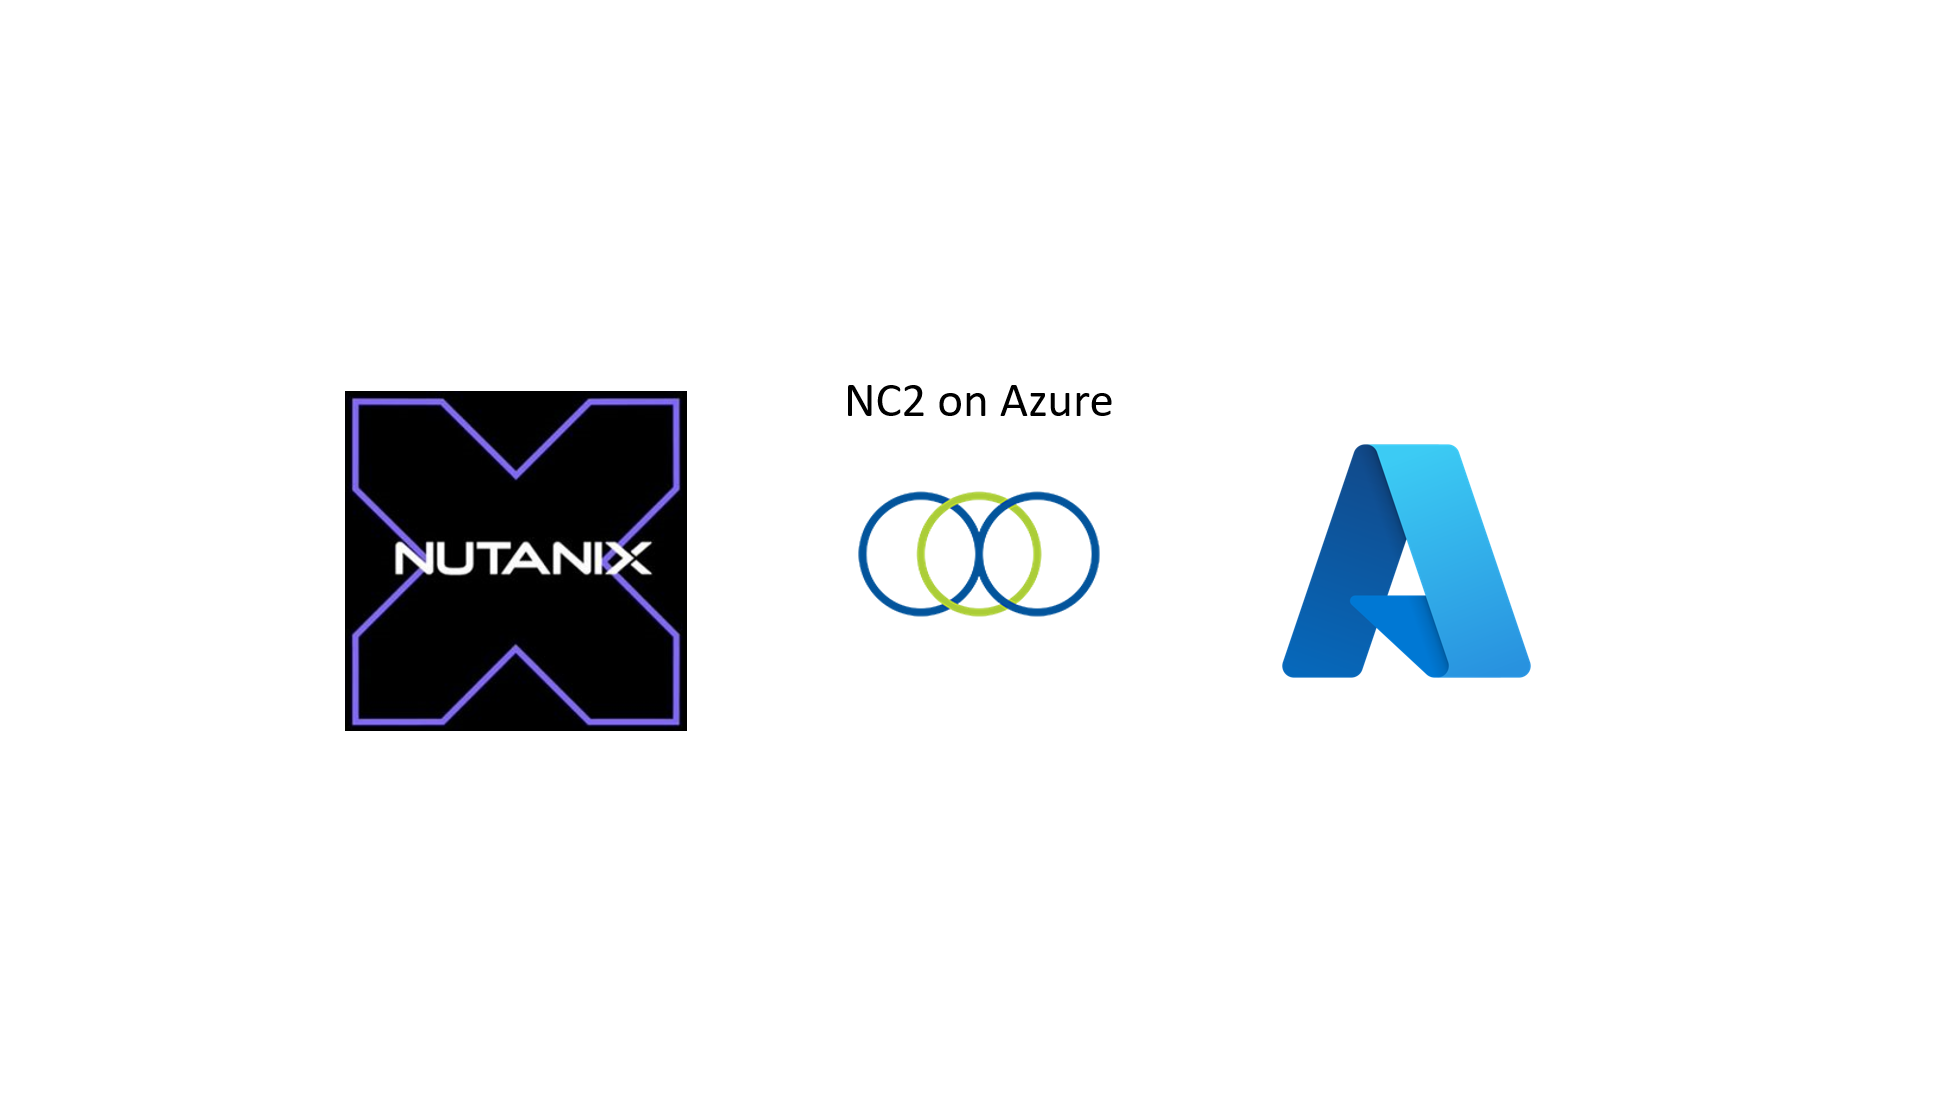 Rapidly scope NC2 on Azure using Nutanix Sizer